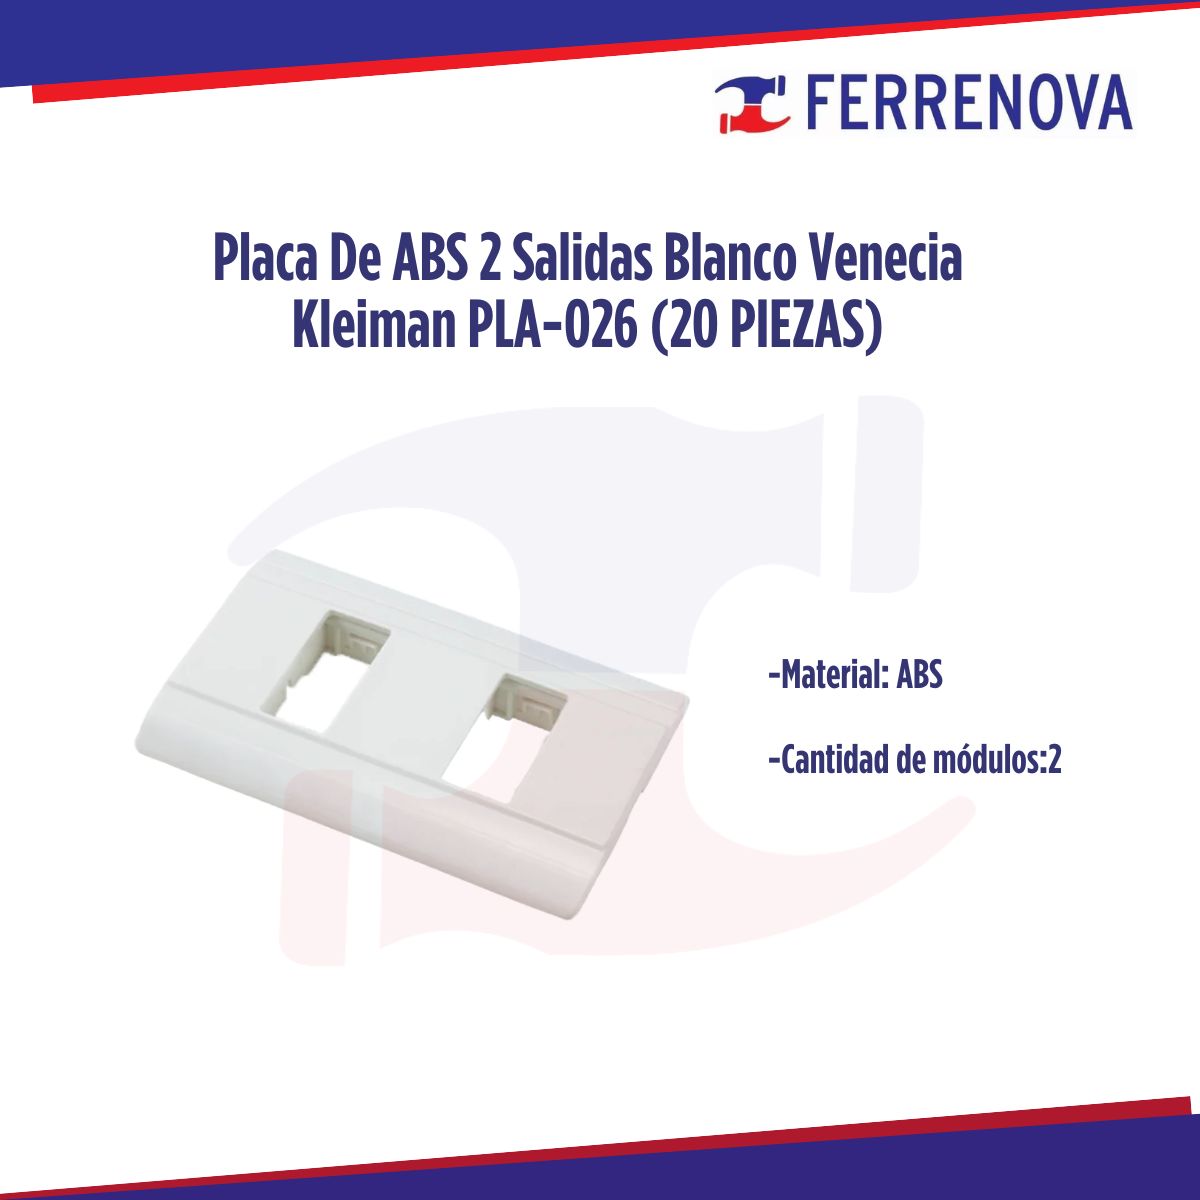 Placa D ABS 2 Salidas Blanco Venecia Kleiman PLA-026 (20 PIEZAS)